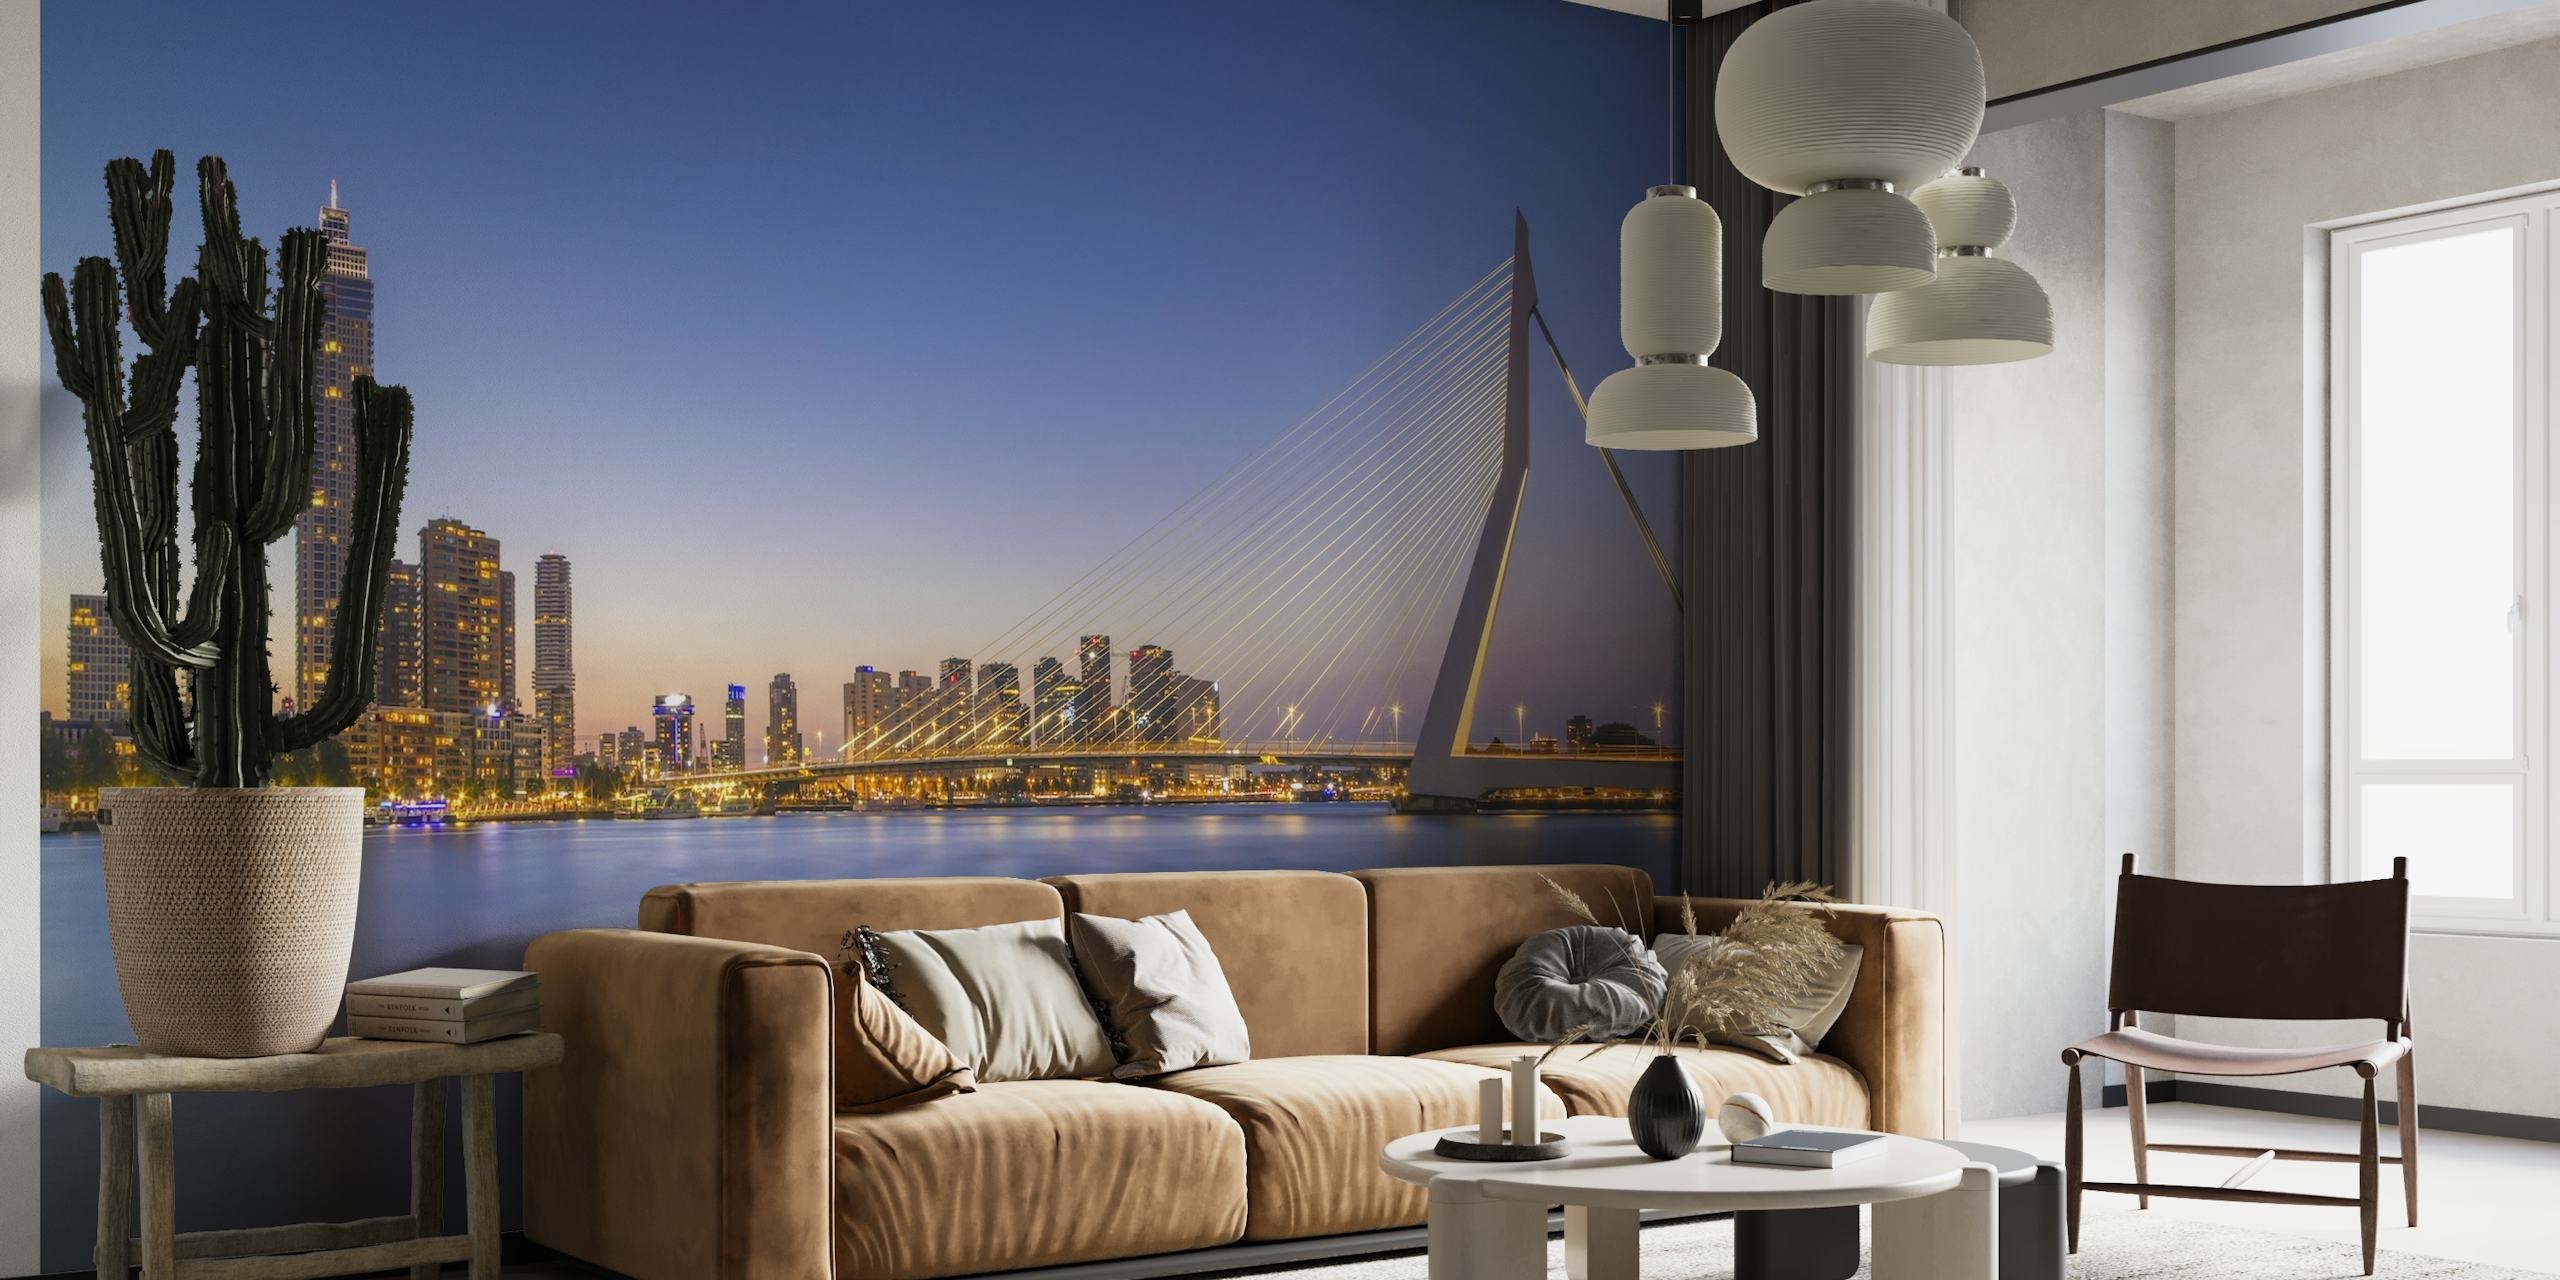 Mural del puente Erasmus y el horizonte de Rotterdam al atardecer con aguas reflectantes